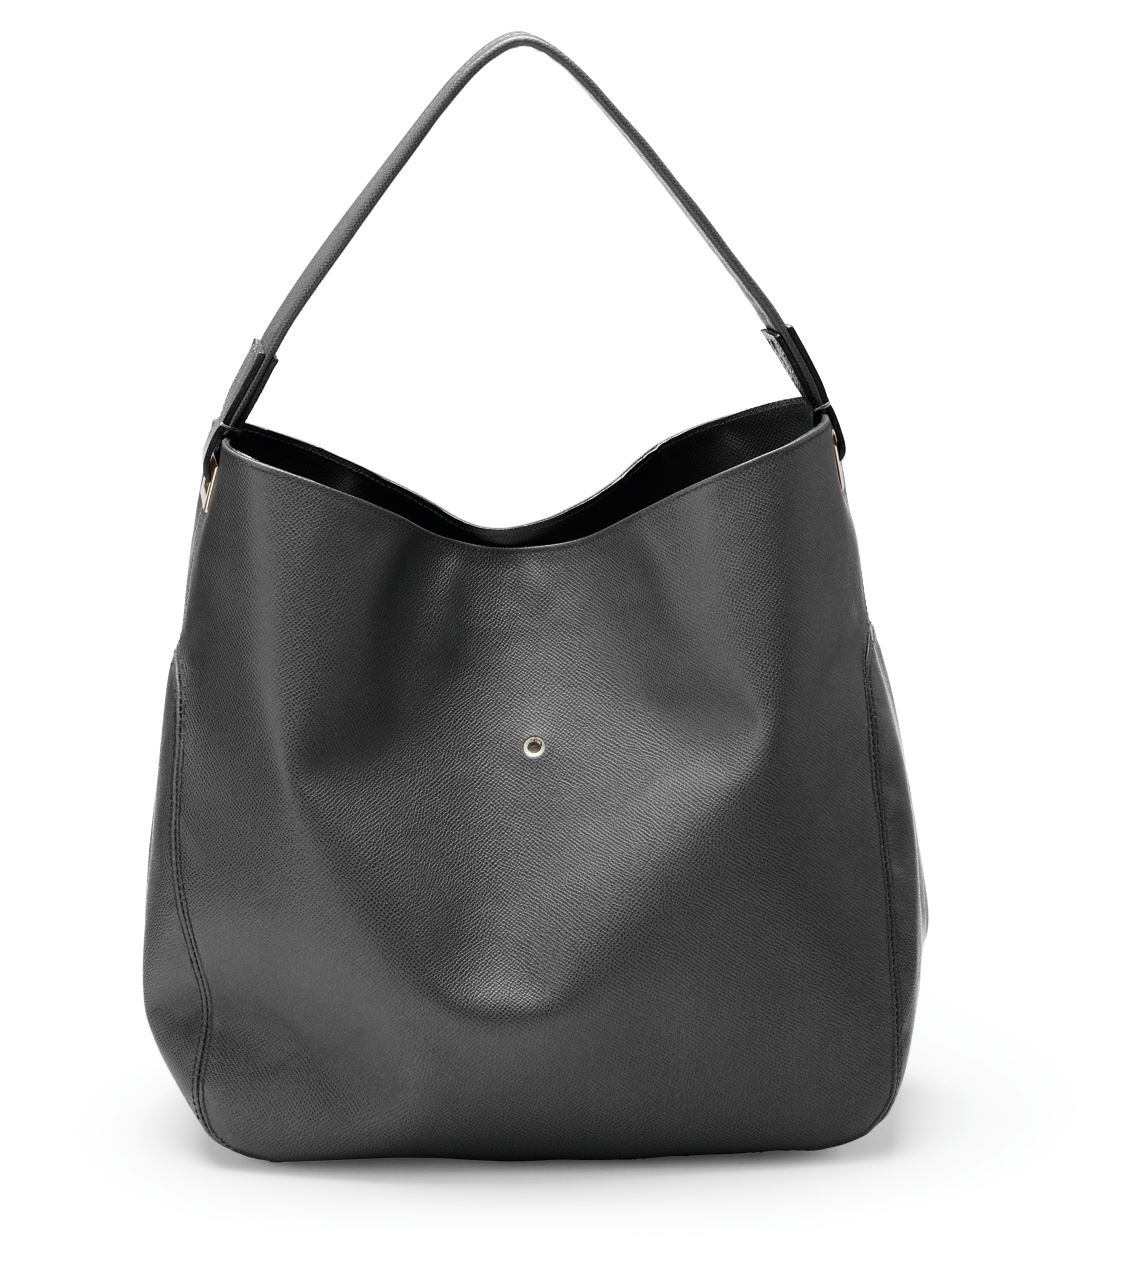 Graf-von-Faber-Castell - Ladies shoulder bag Epsom, Black